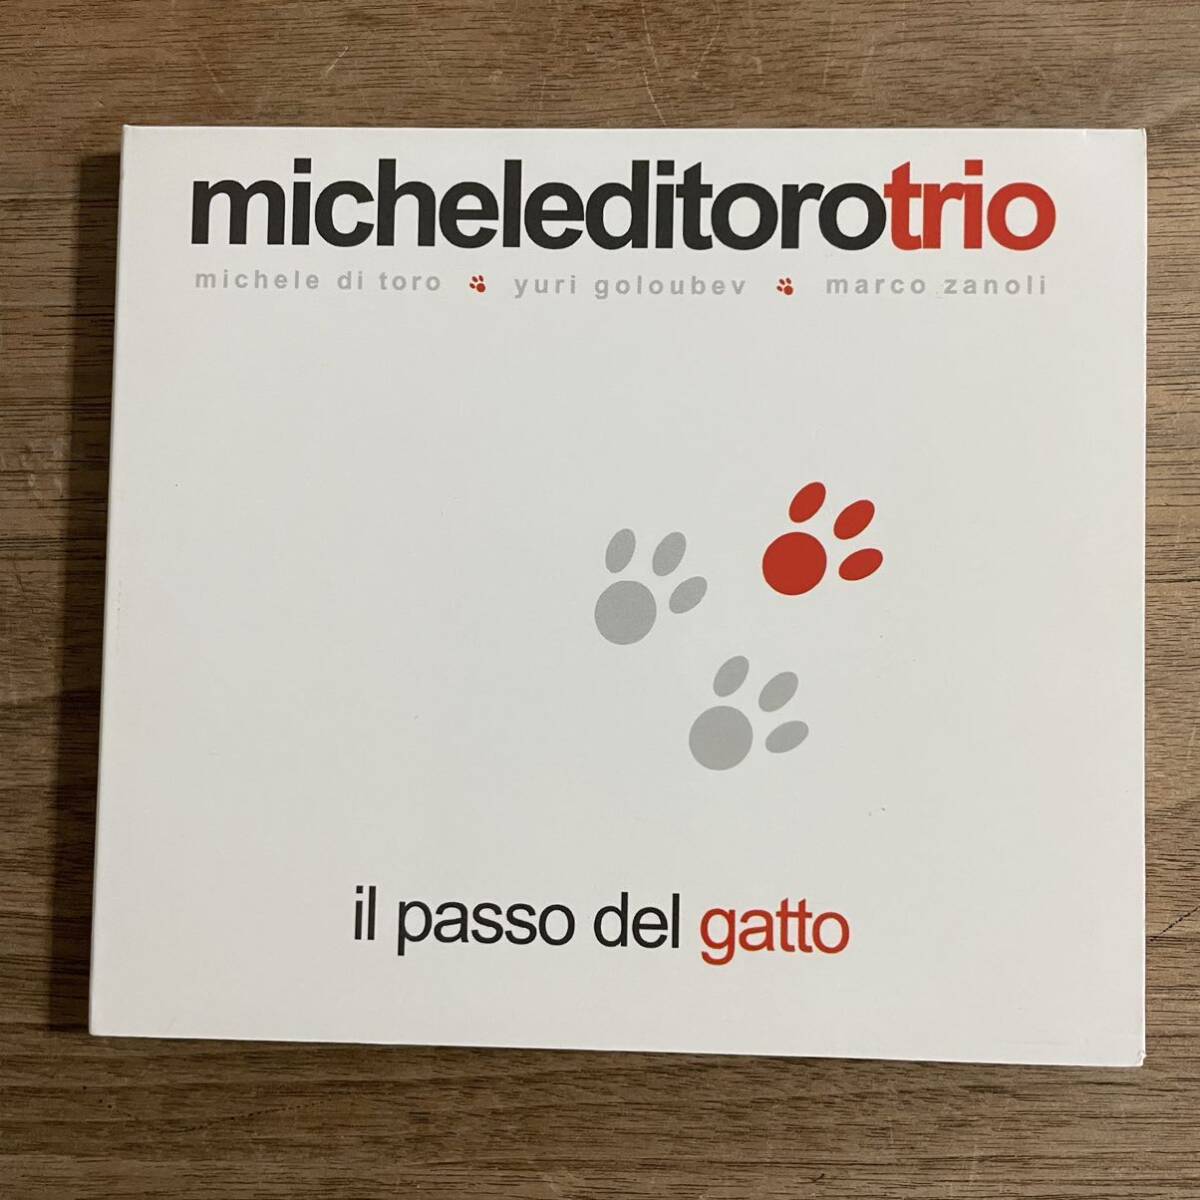 「ピアノトリオ秀逸盤CD】Michele Di Toro Trio 「Il Passo Del Gatto 」イタリア盤Abeat for JAZZ AB JZ045 2005年録音ジャズ批評掲載作品_画像1